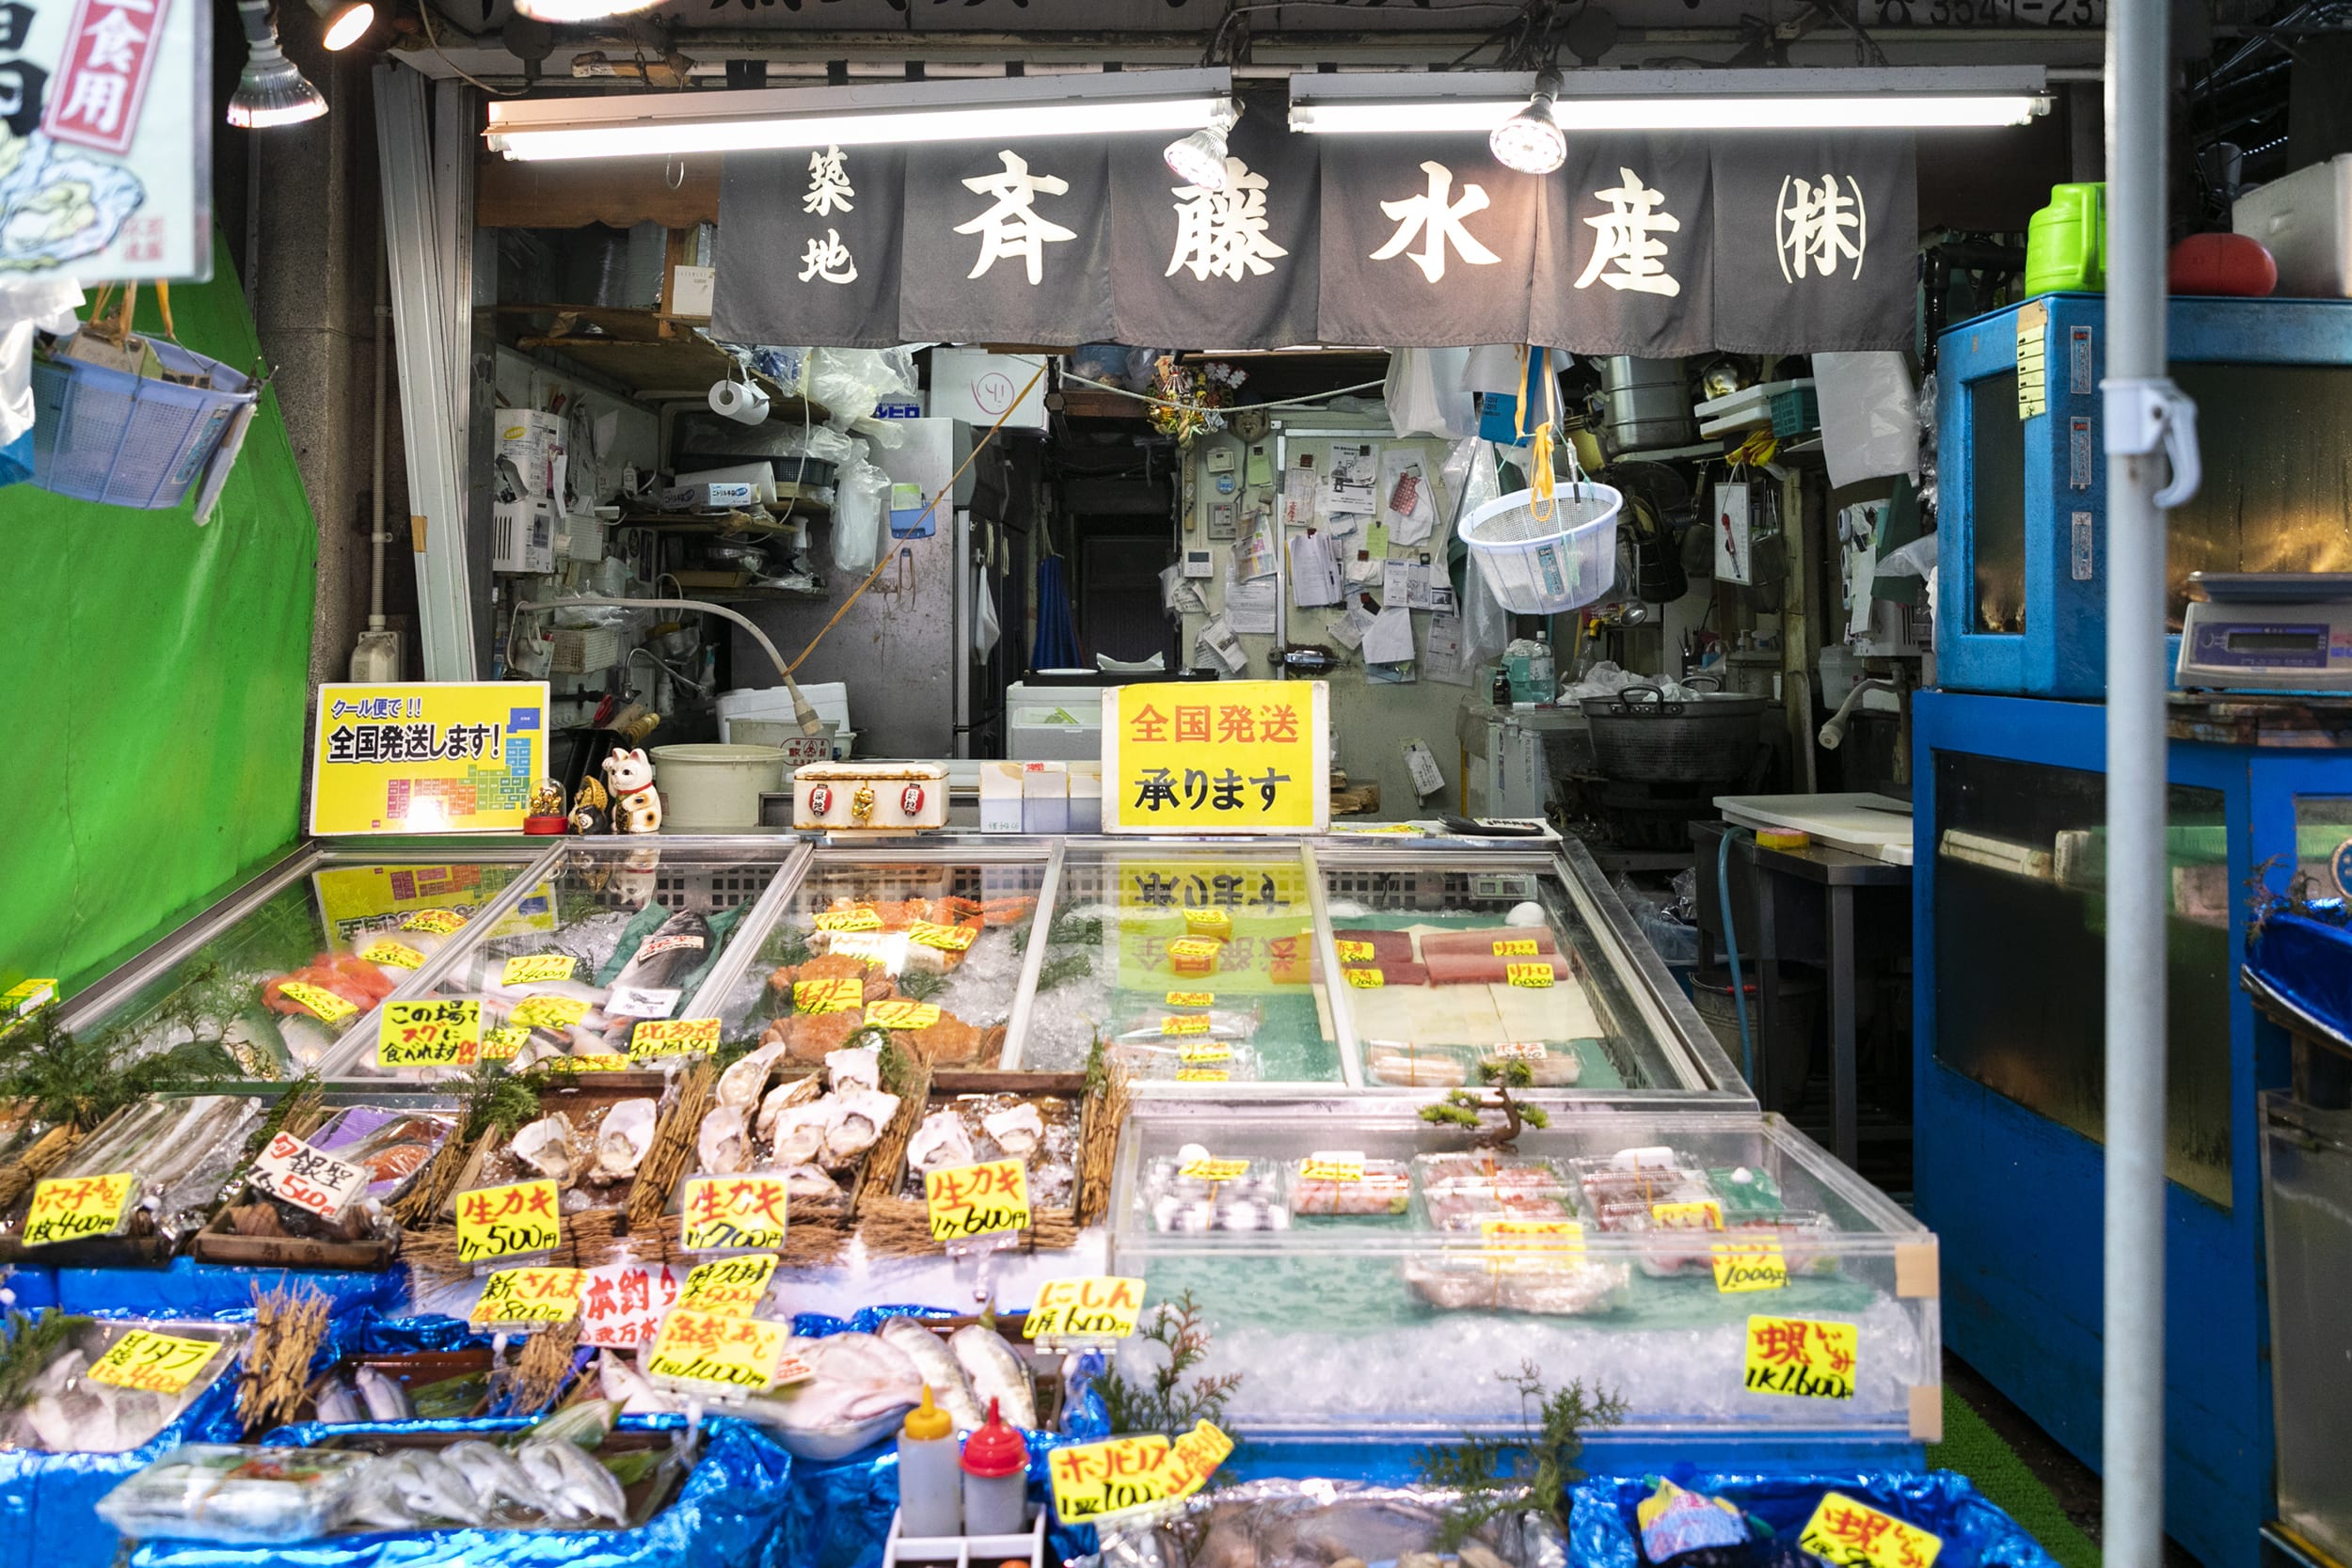 鮮魚貝類 鮮魚 魚類加工品 お店を探す 築地場外市場 公式ホームページ